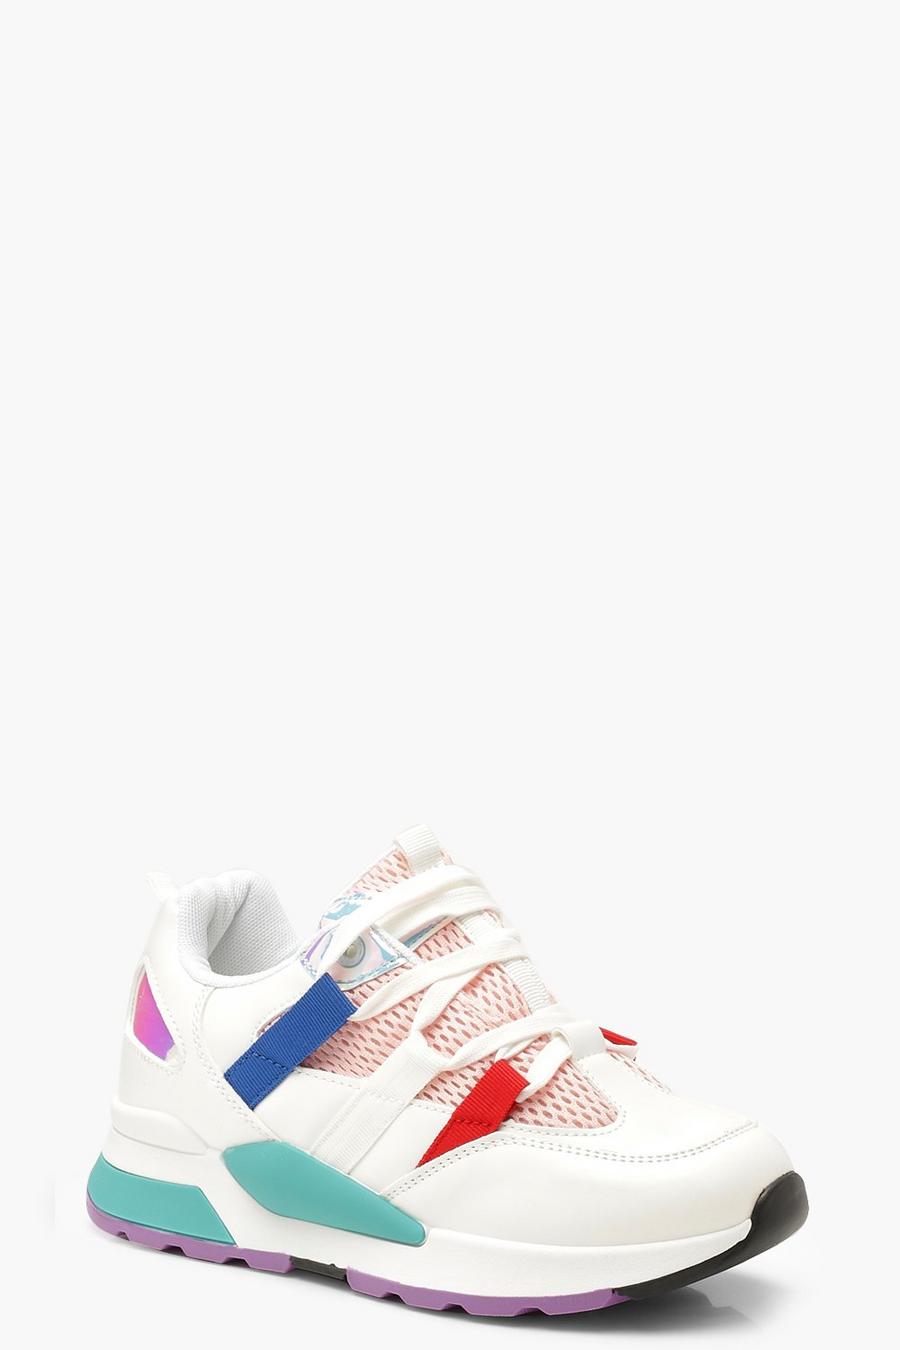 Zapatillas deportivas gruesas en color llamativo con suela de tacos image number 1